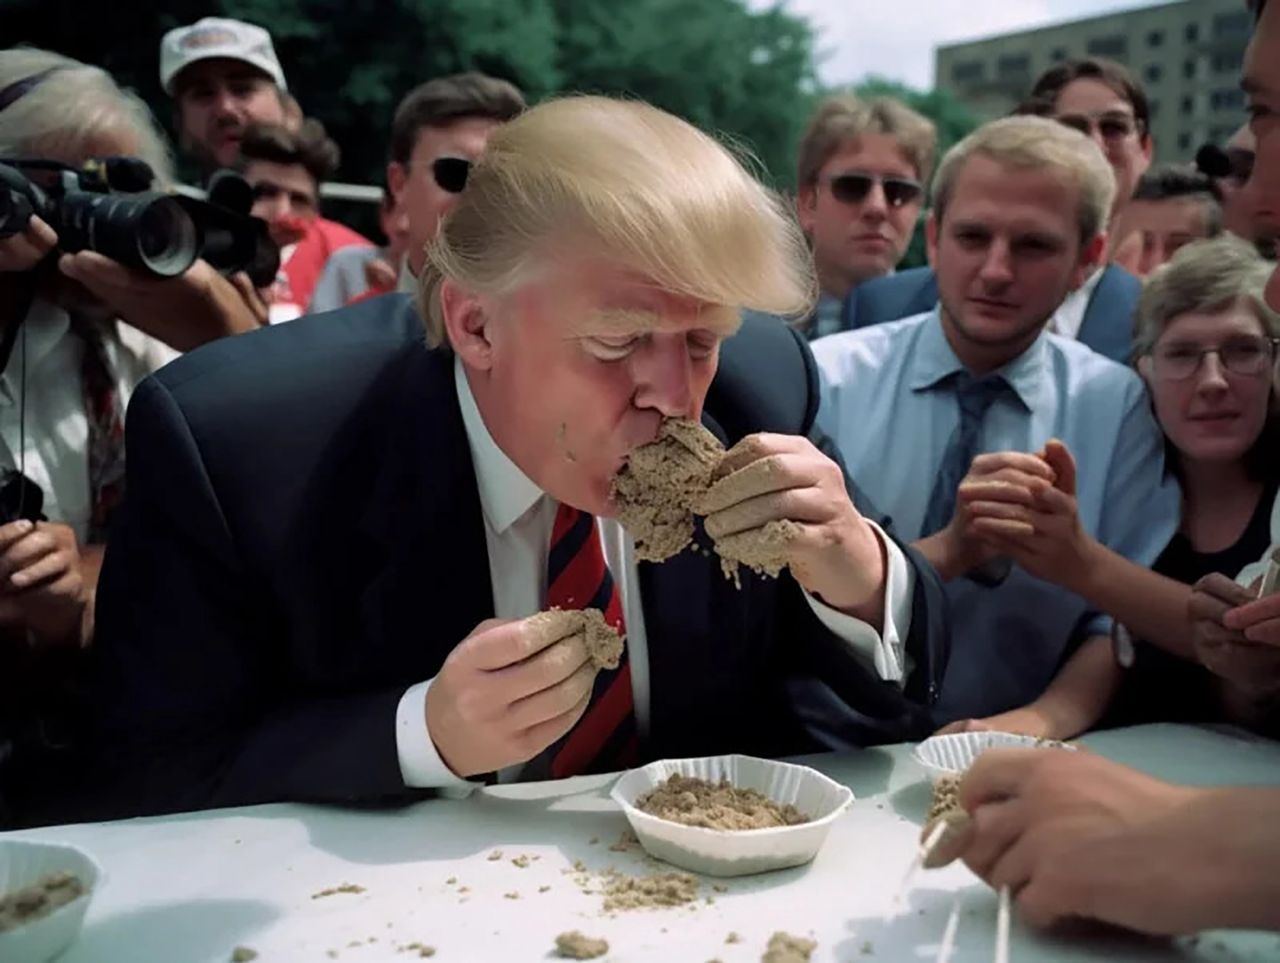 "Donald Trump jedzący cement". Oczywiście grafika jest fałszywa. To NIE jest zdjęcie.